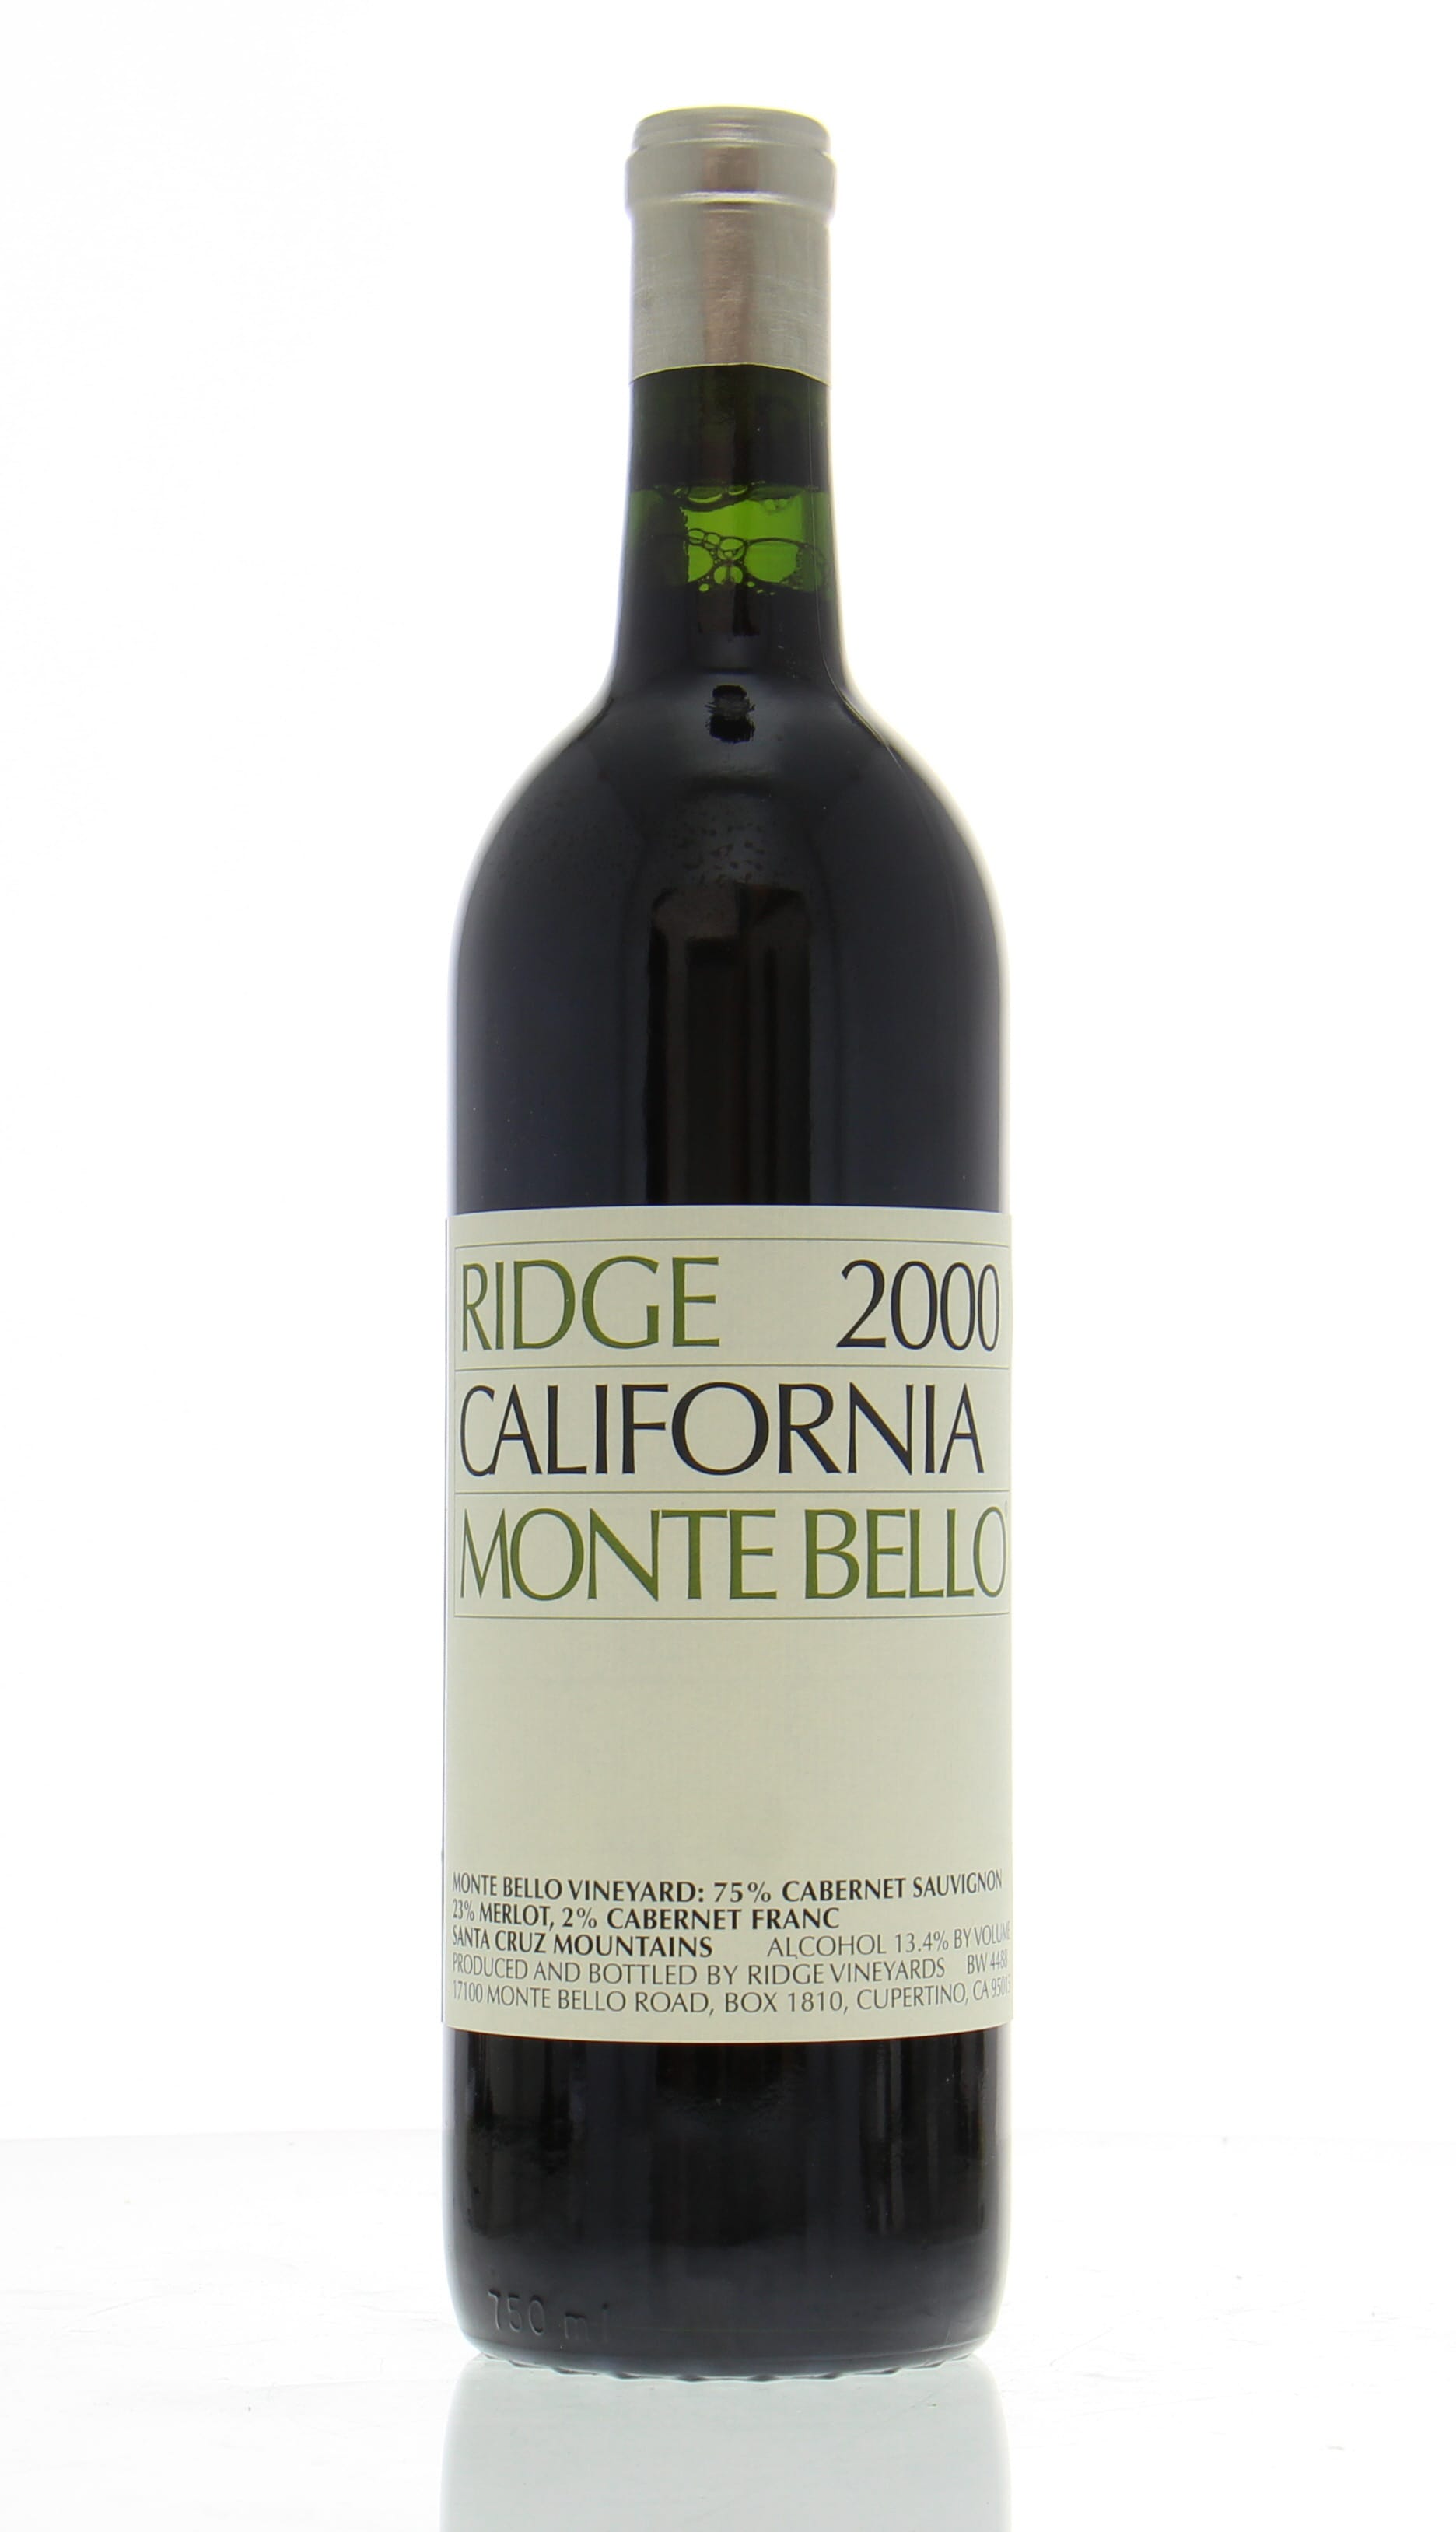 Ridge - Monte Bello 2000 Perfect